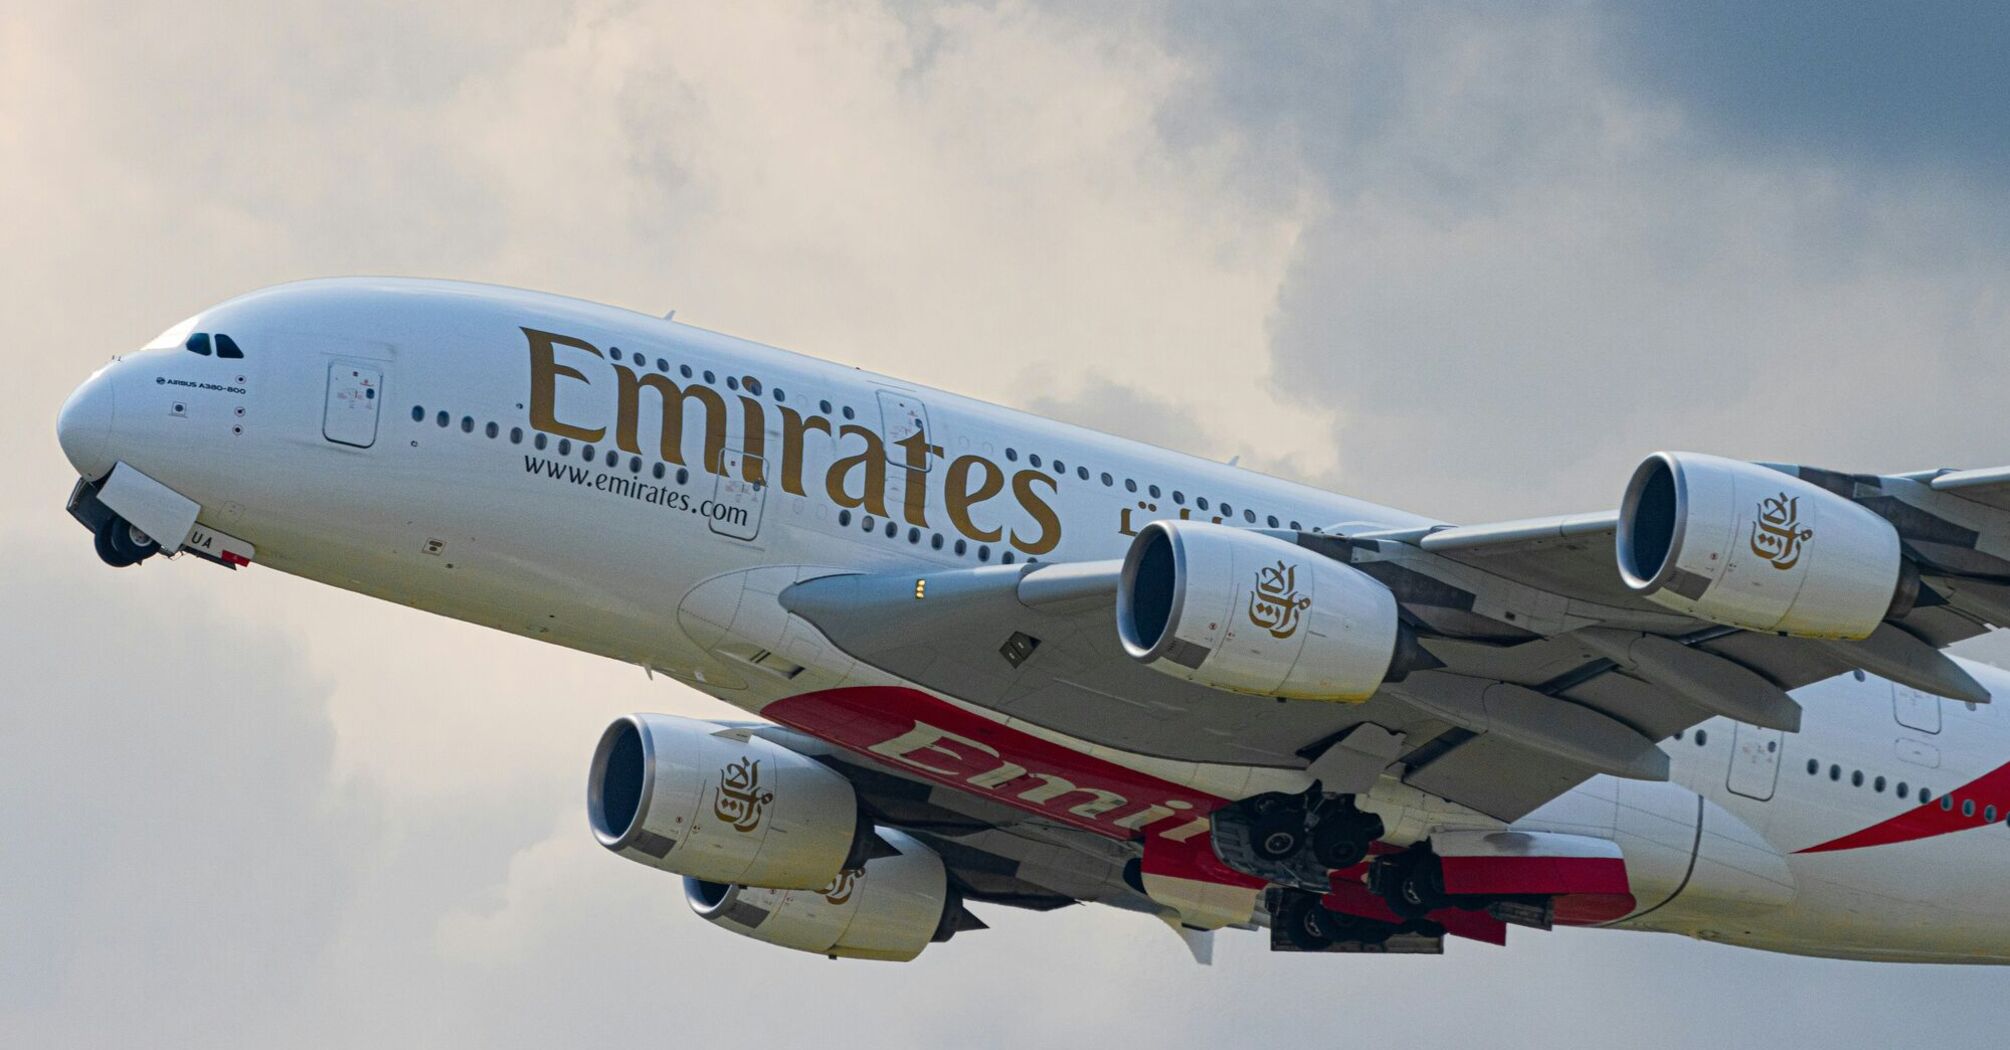 Emirates airjet at Zurich Airport, Switzerland